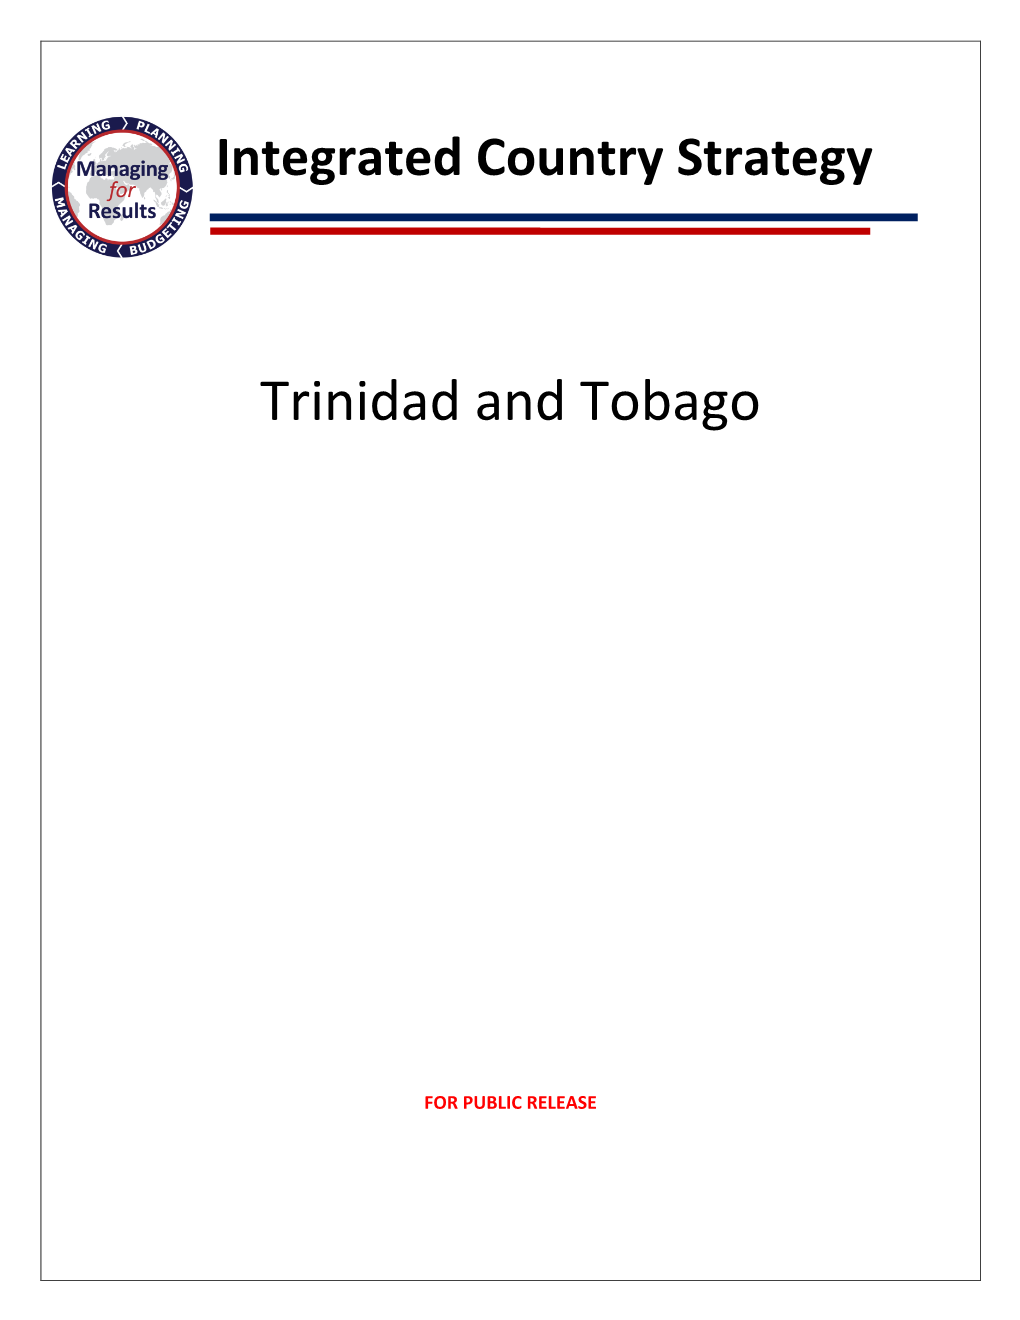 ICS Trinidad and Tobago